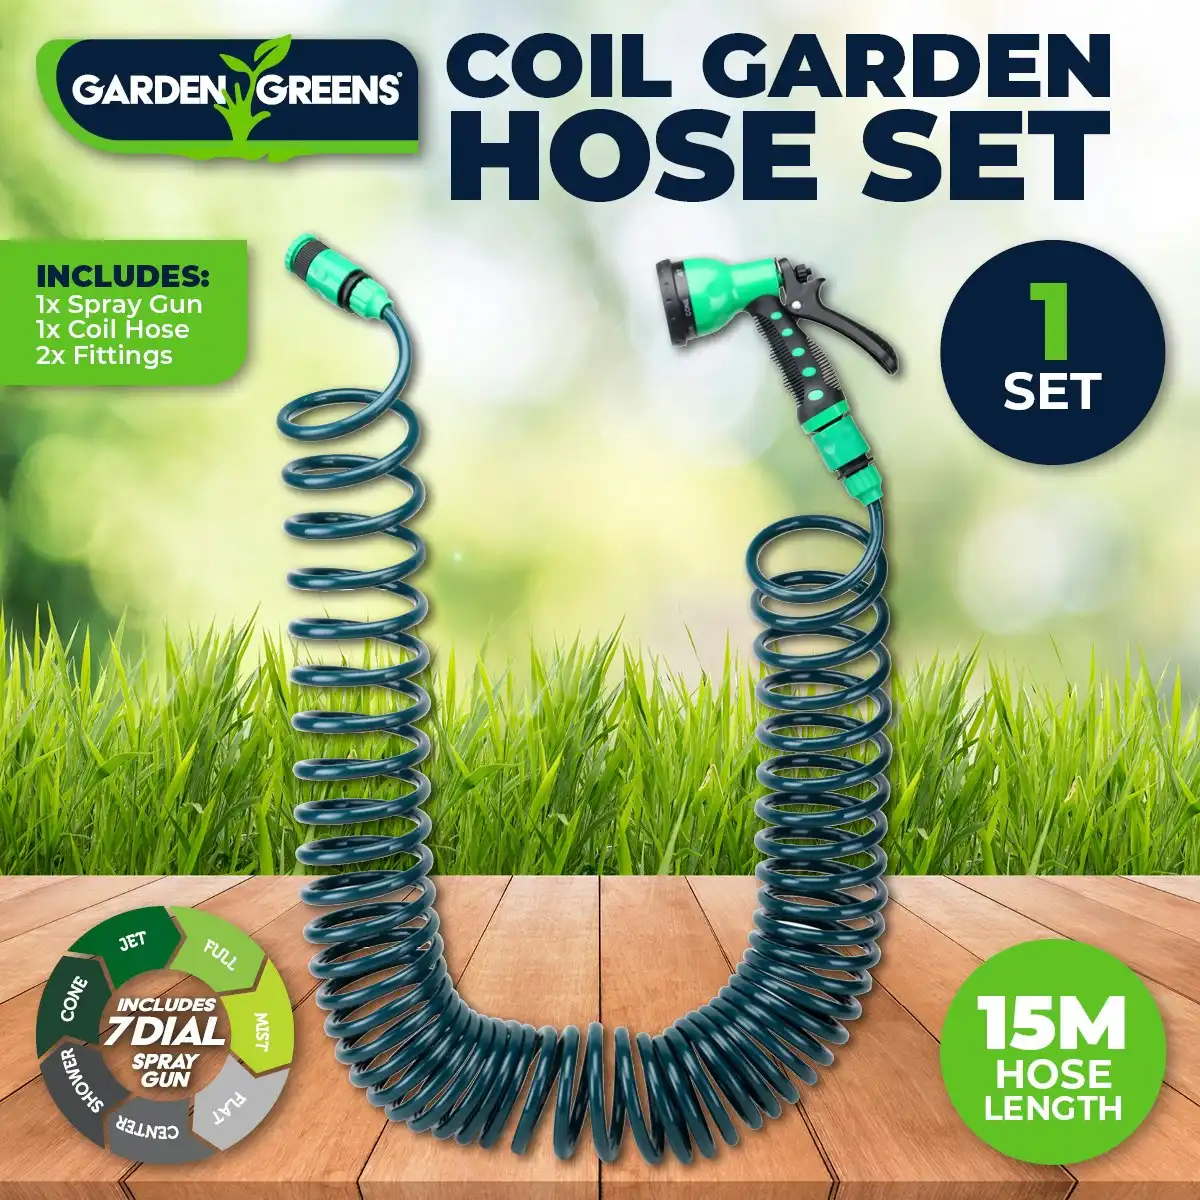 Garden Greens Garden Hose Set Coil Design 7 Dial Spray Gun & Fittings 15m